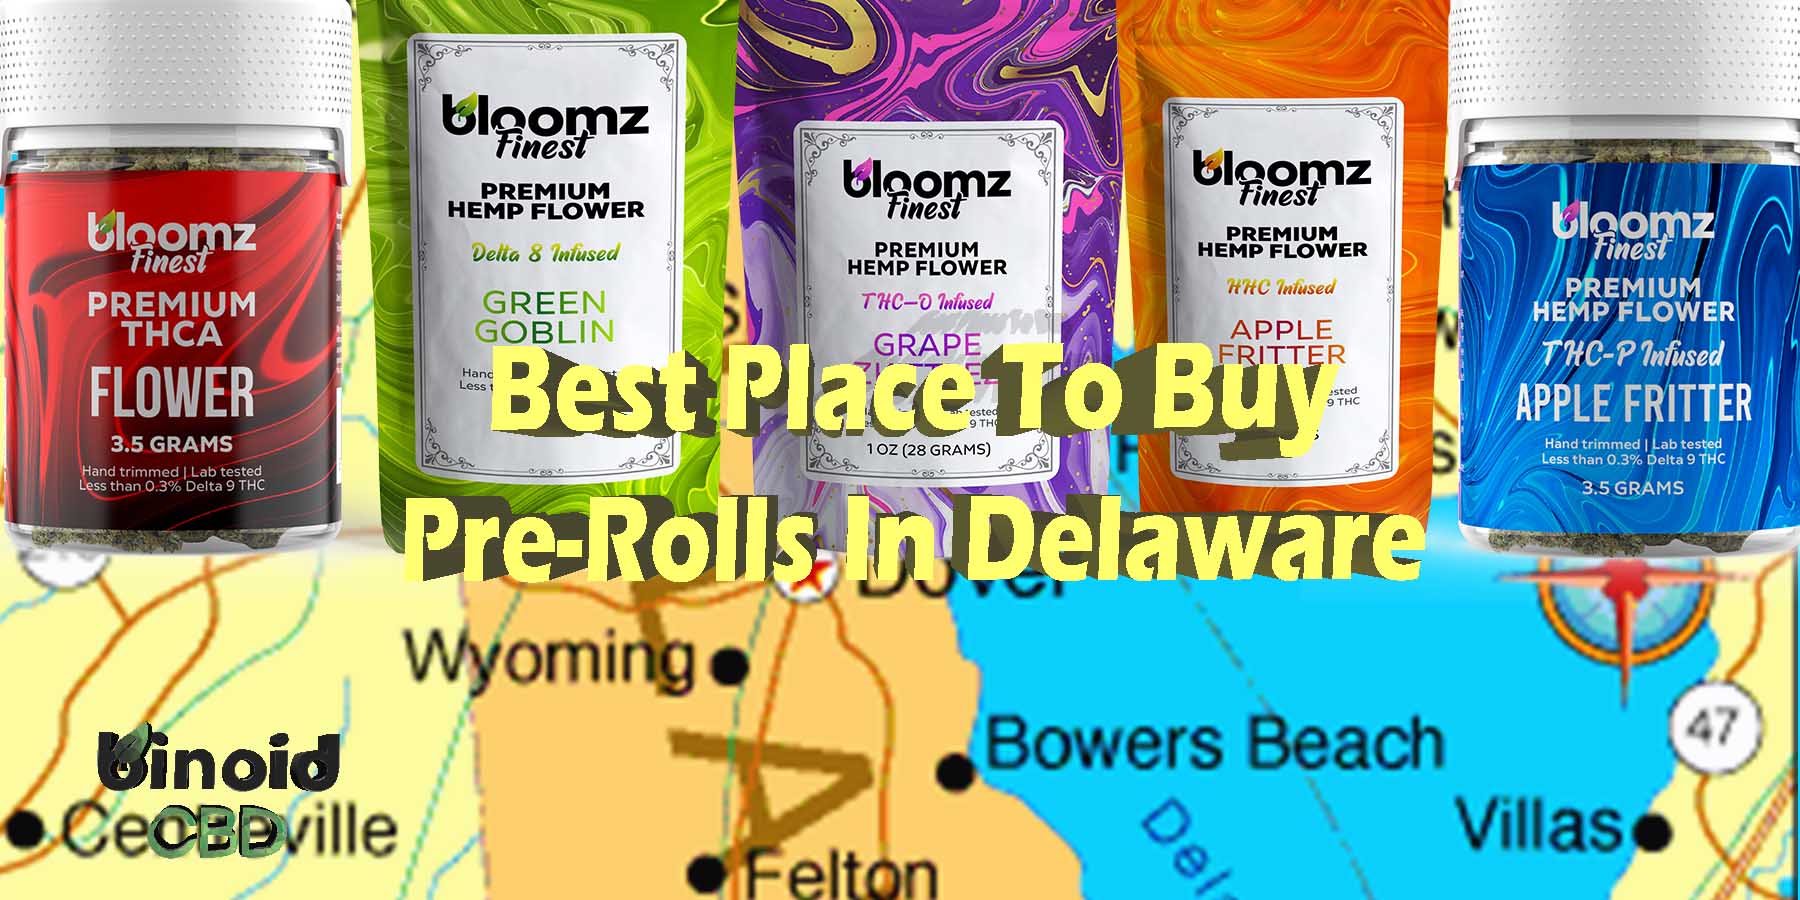 Best Place To Buy Pre-Rolls In Delaware Legal Quality Hemp For Sale Near Me Shop PreRolls Legal For Sale Near Me Shop Best Brand How To Purchase Online Binoid